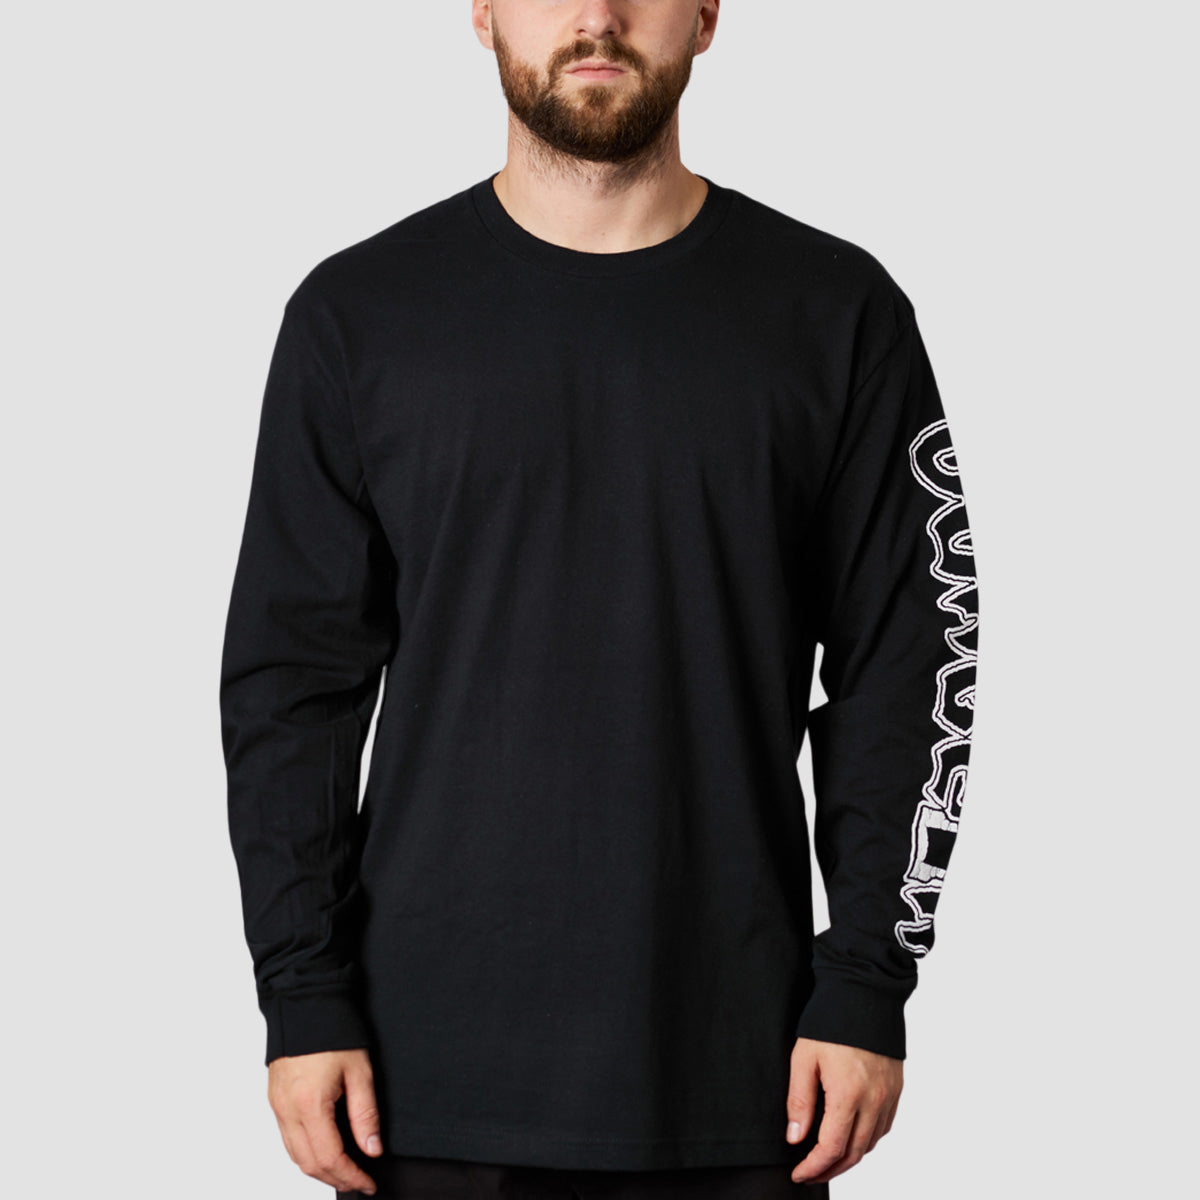 Dungeon Portculiss Longsleeve T-Shirt Black